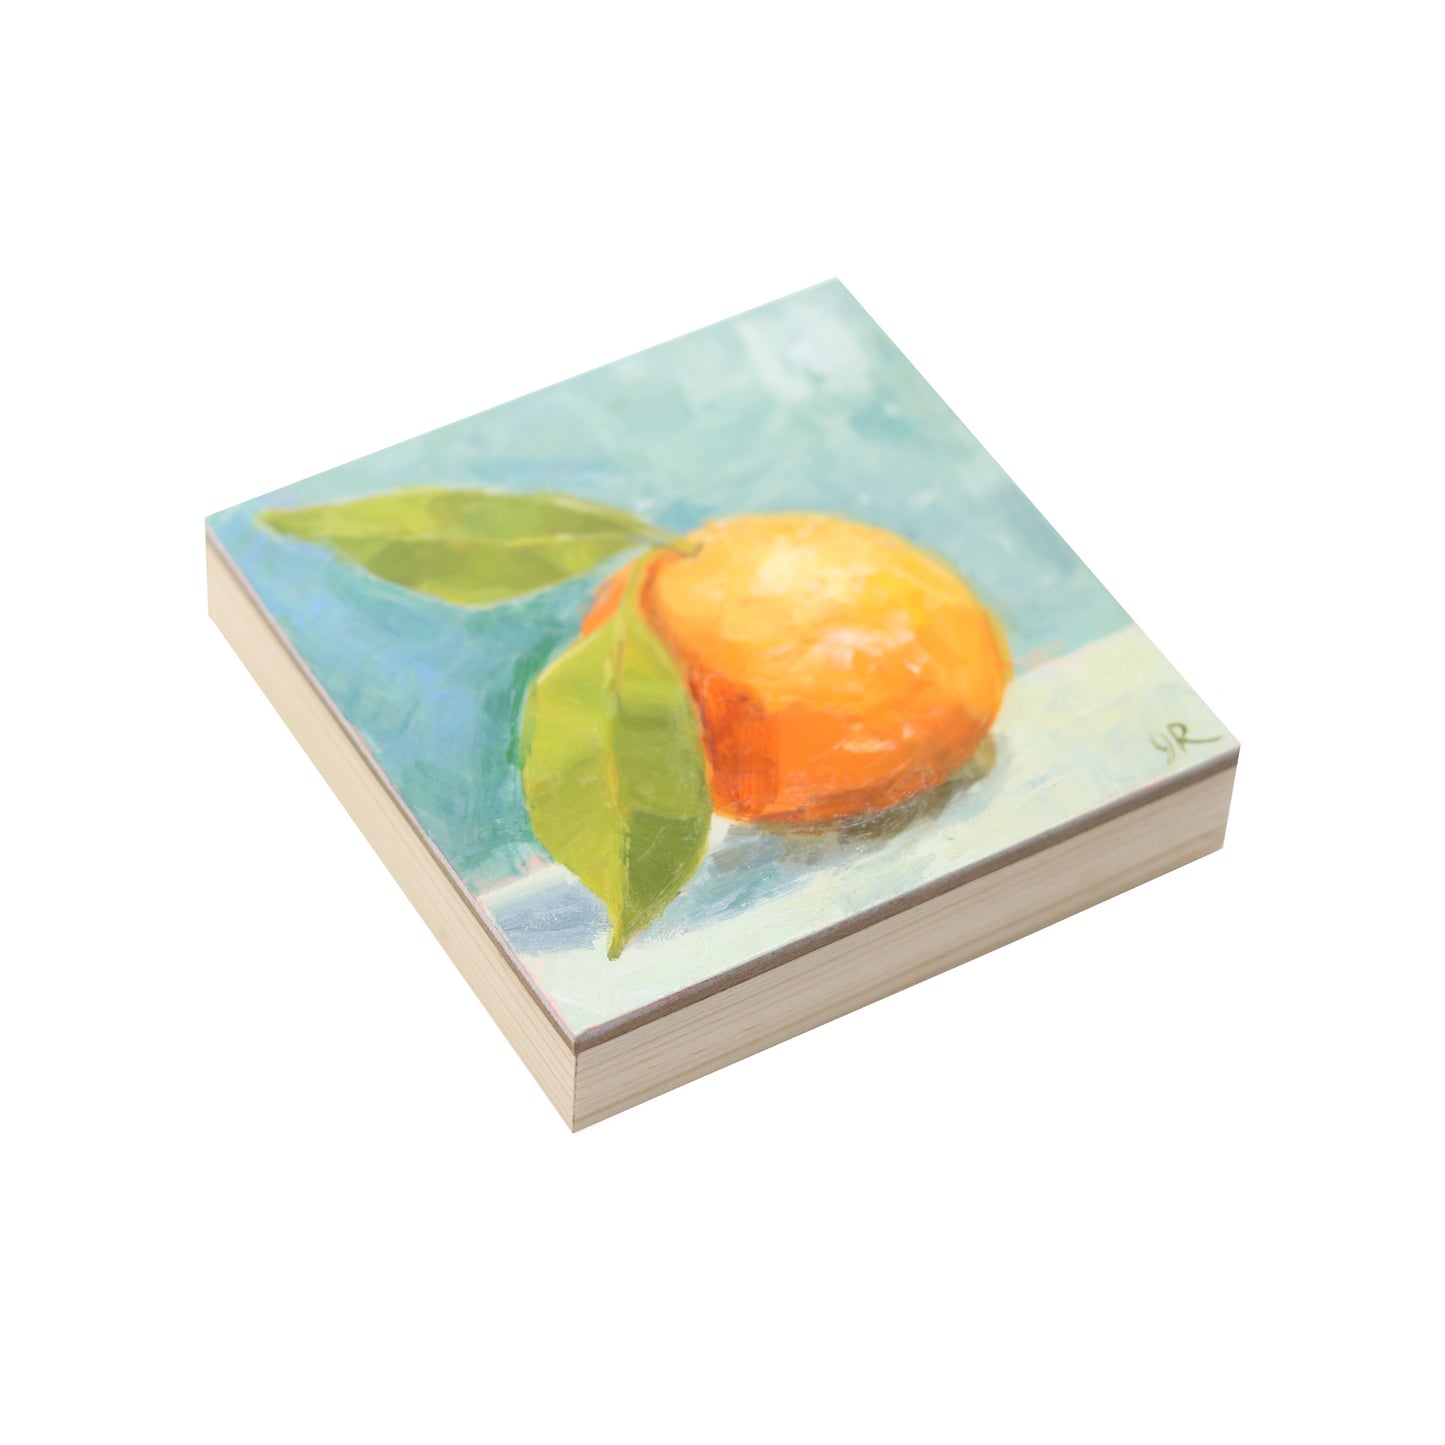 Orange You Glad | Original Oil Painting | Mini Art 4”x4”